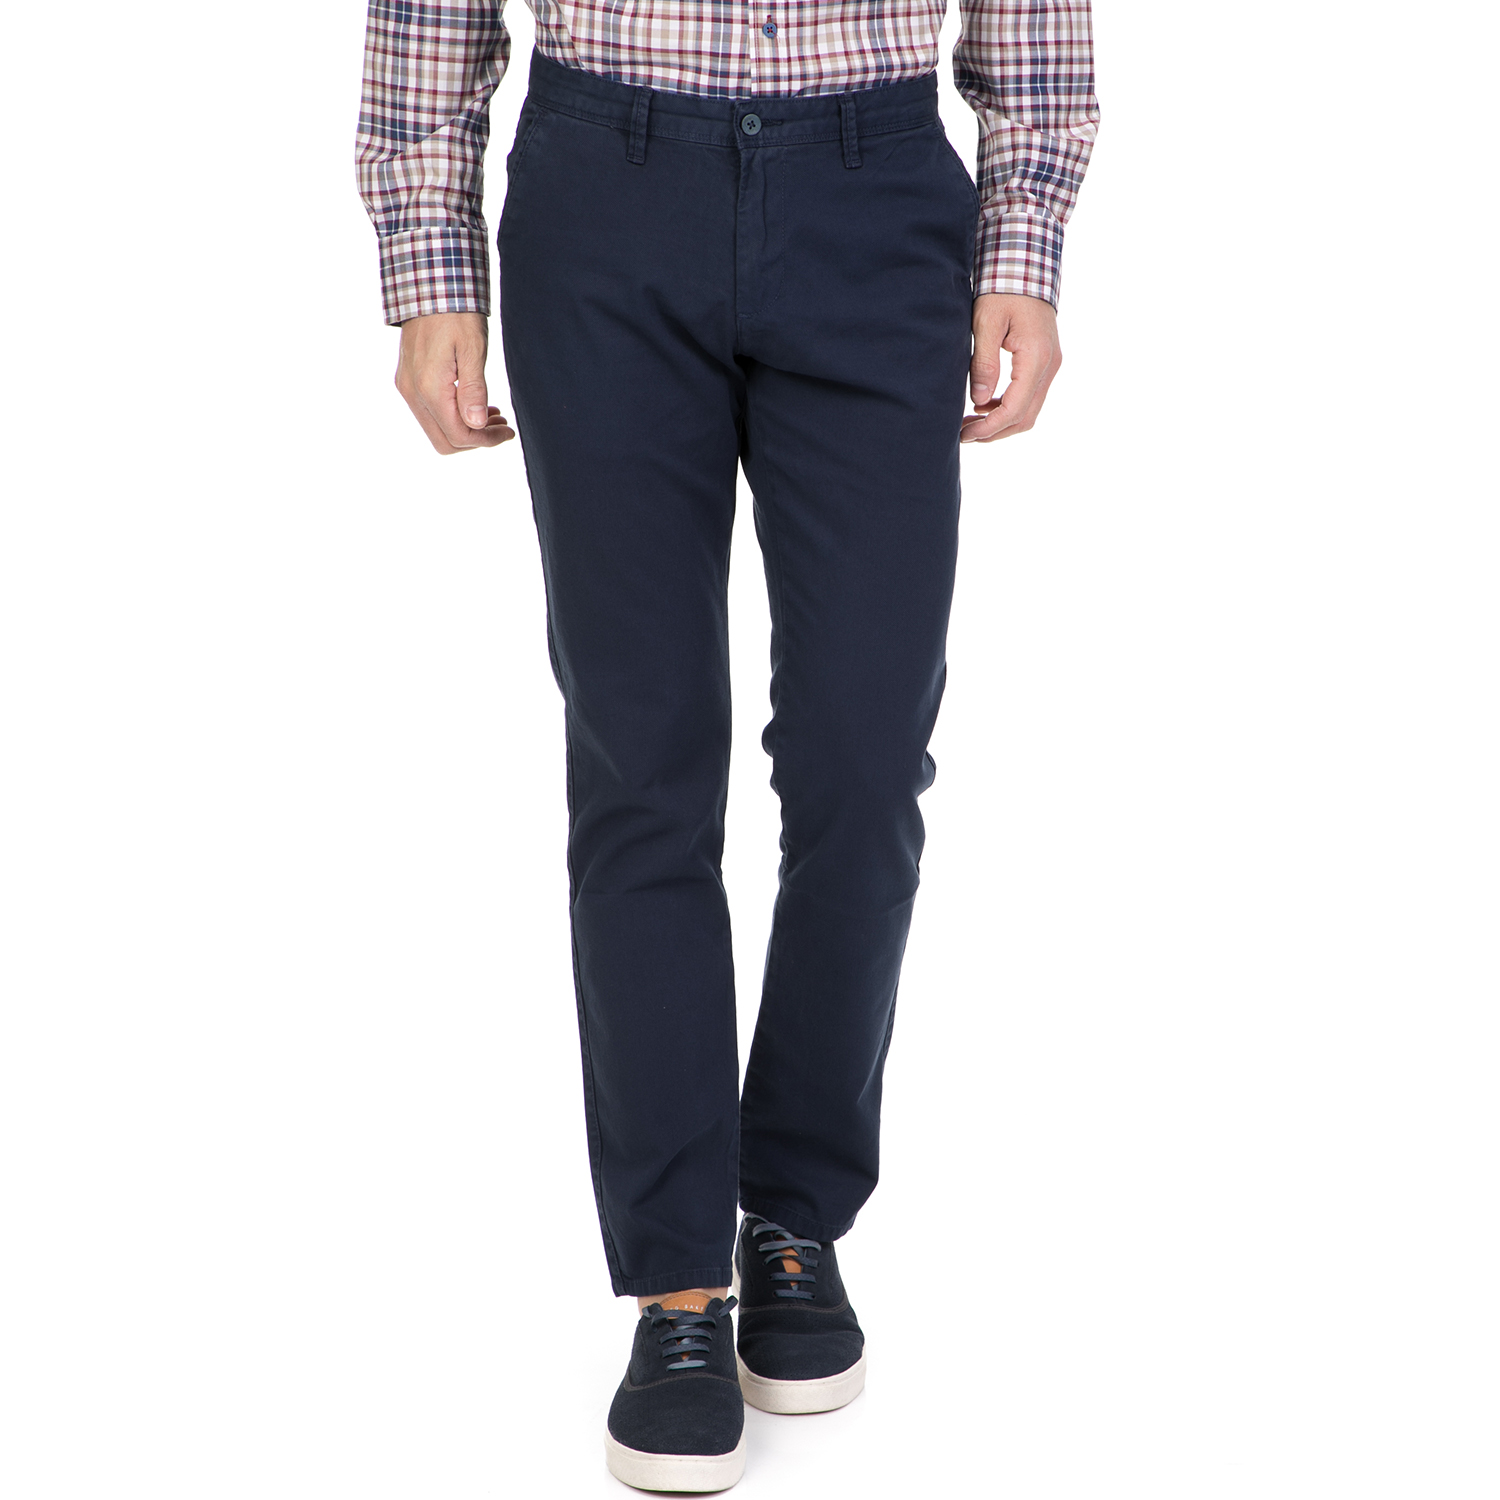 Ανδρικά/Ρούχα/Παντελόνια/Chinos DORS - Ανδρικό παντελόνι DORS μπλε